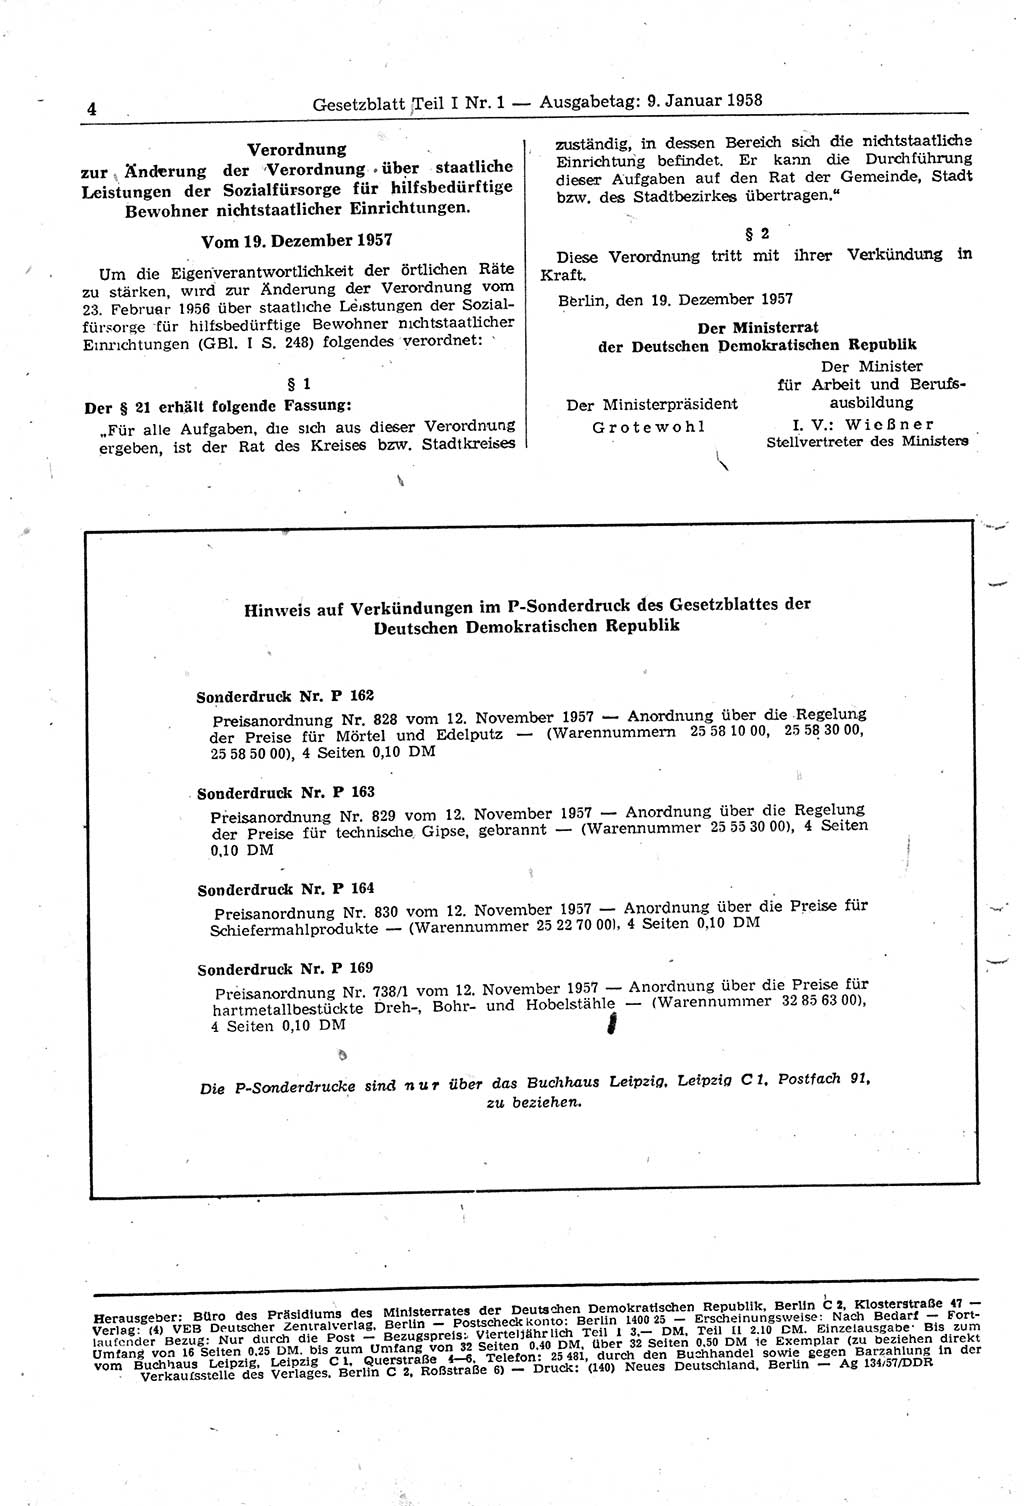 Gesetzblatt (GBl.) der Deutschen Demokratischen Republik (DDR) Teil â… 1958, Seite 4 (GBl. DDR â… 1958, S. 4)